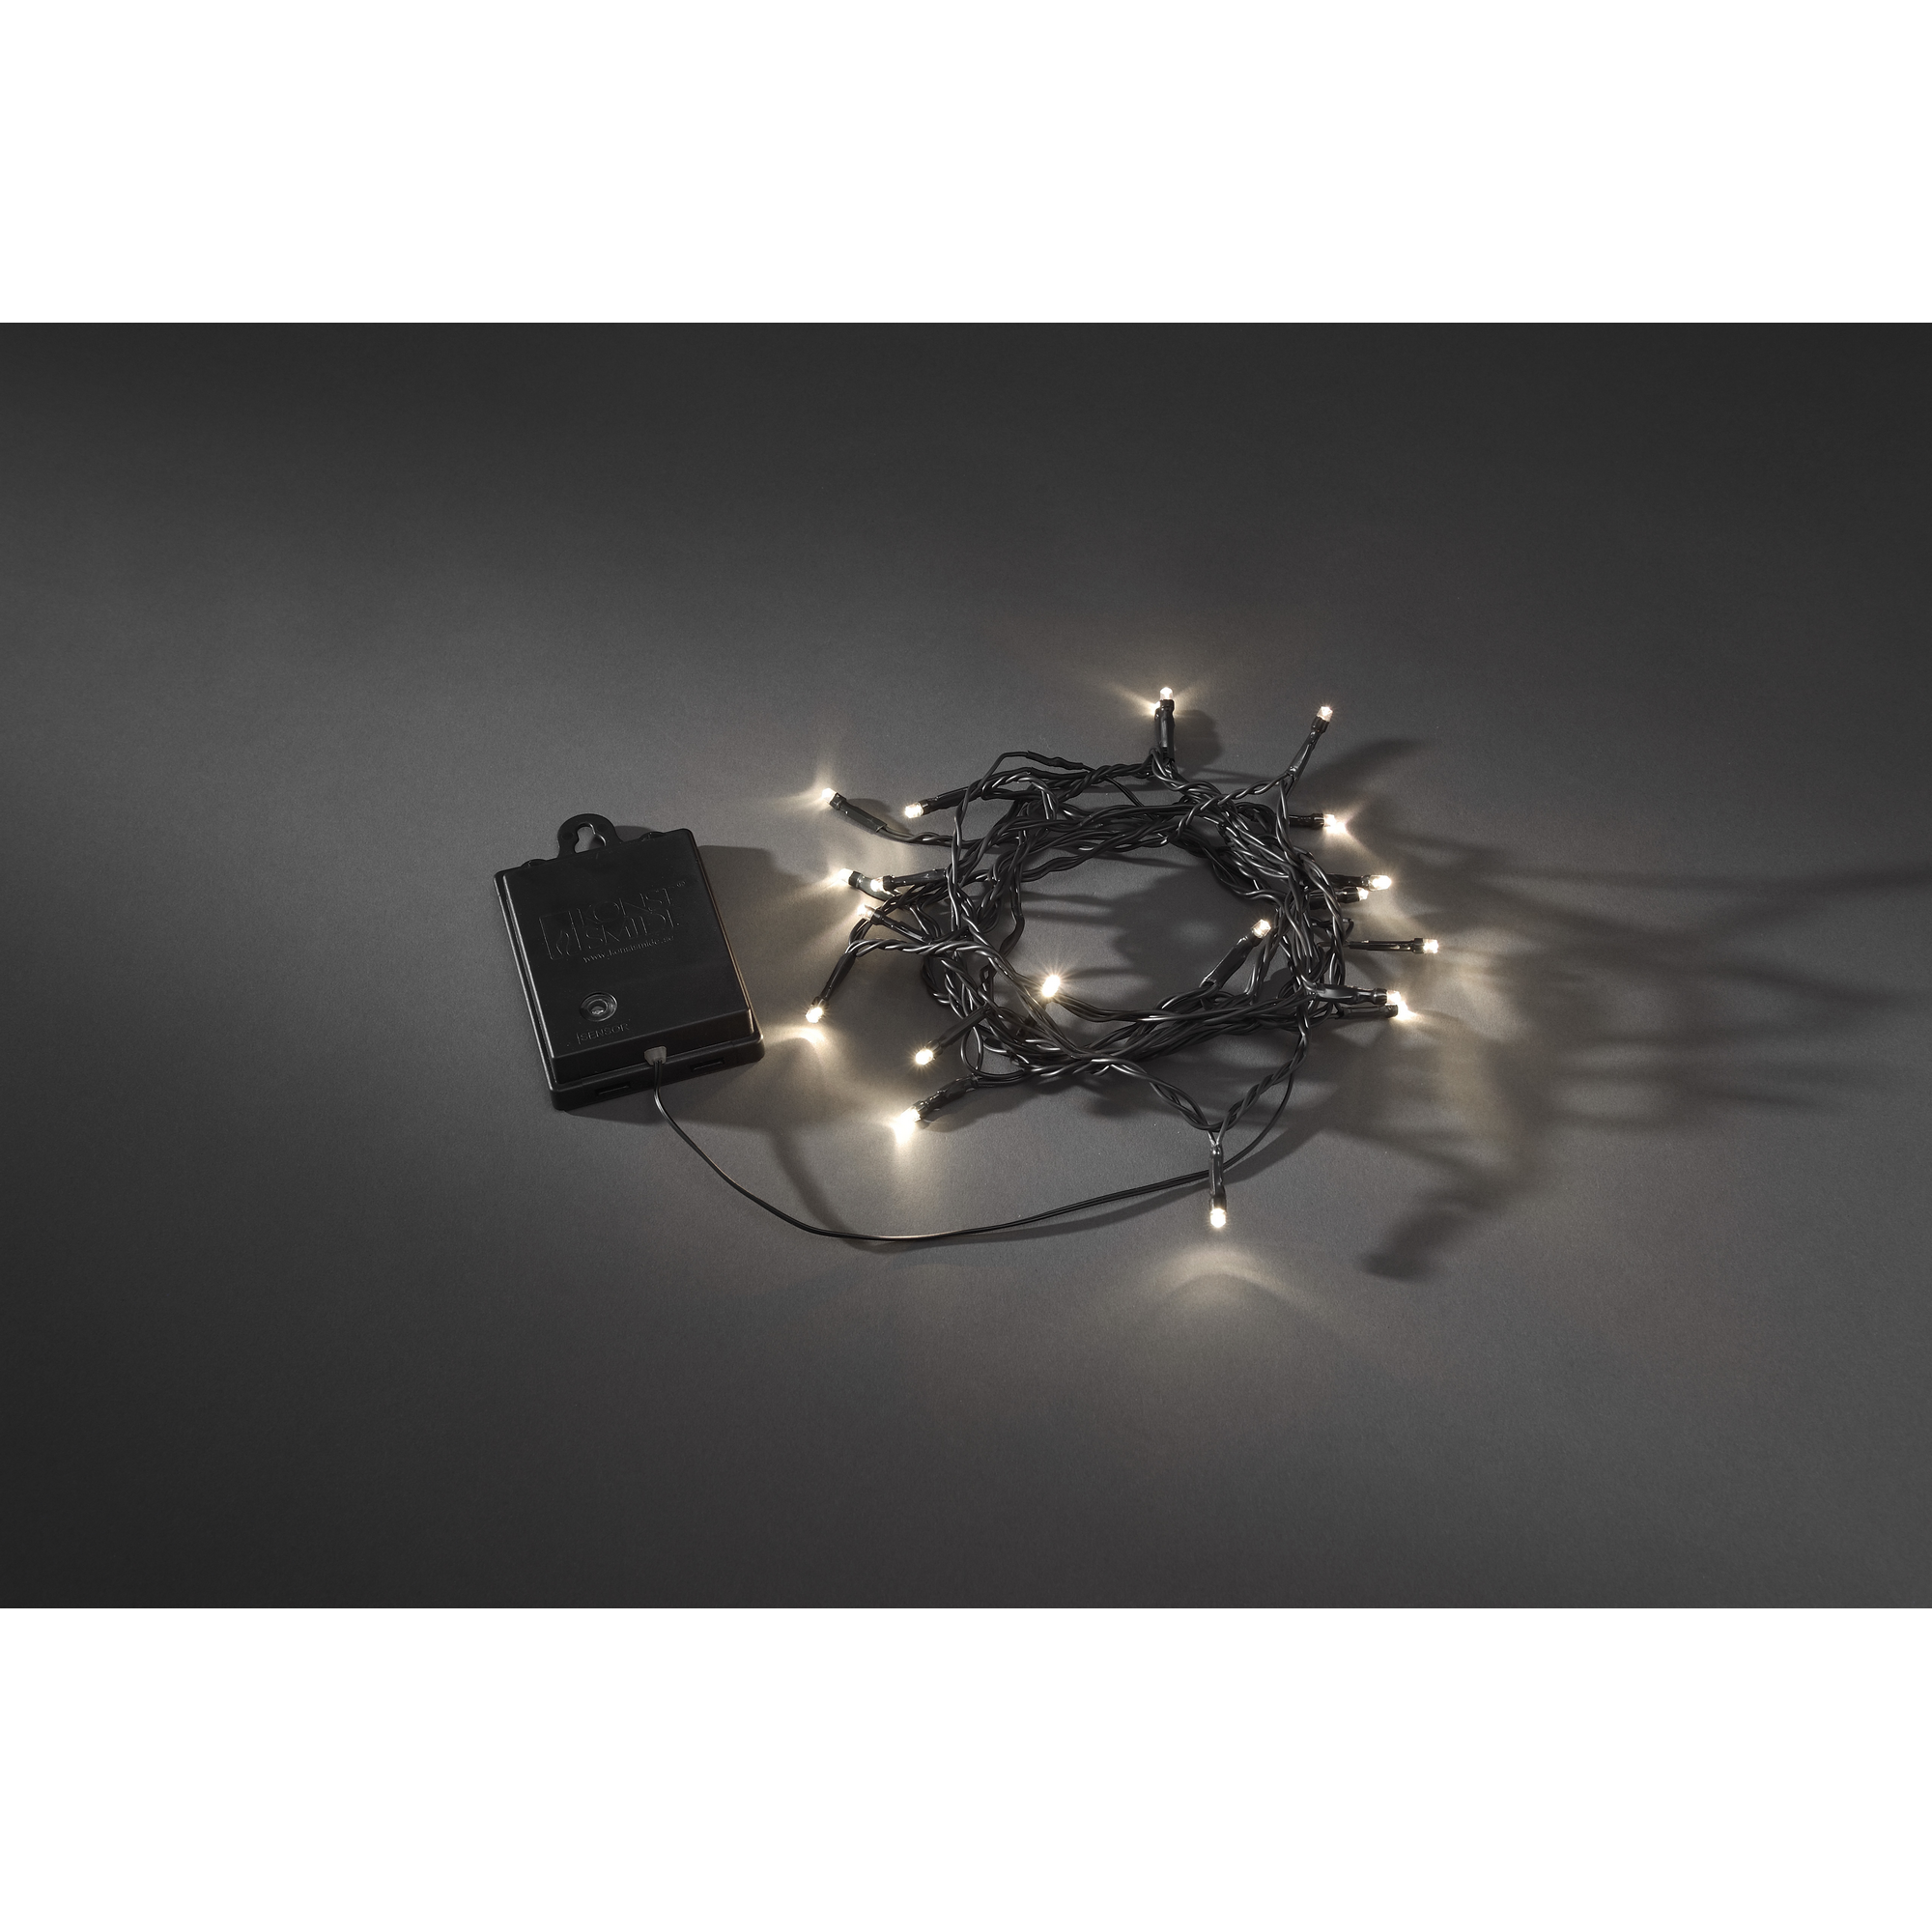 LED-Lichterkette schwarz 80 LEDs 84 m batteriebetrieben + product picture